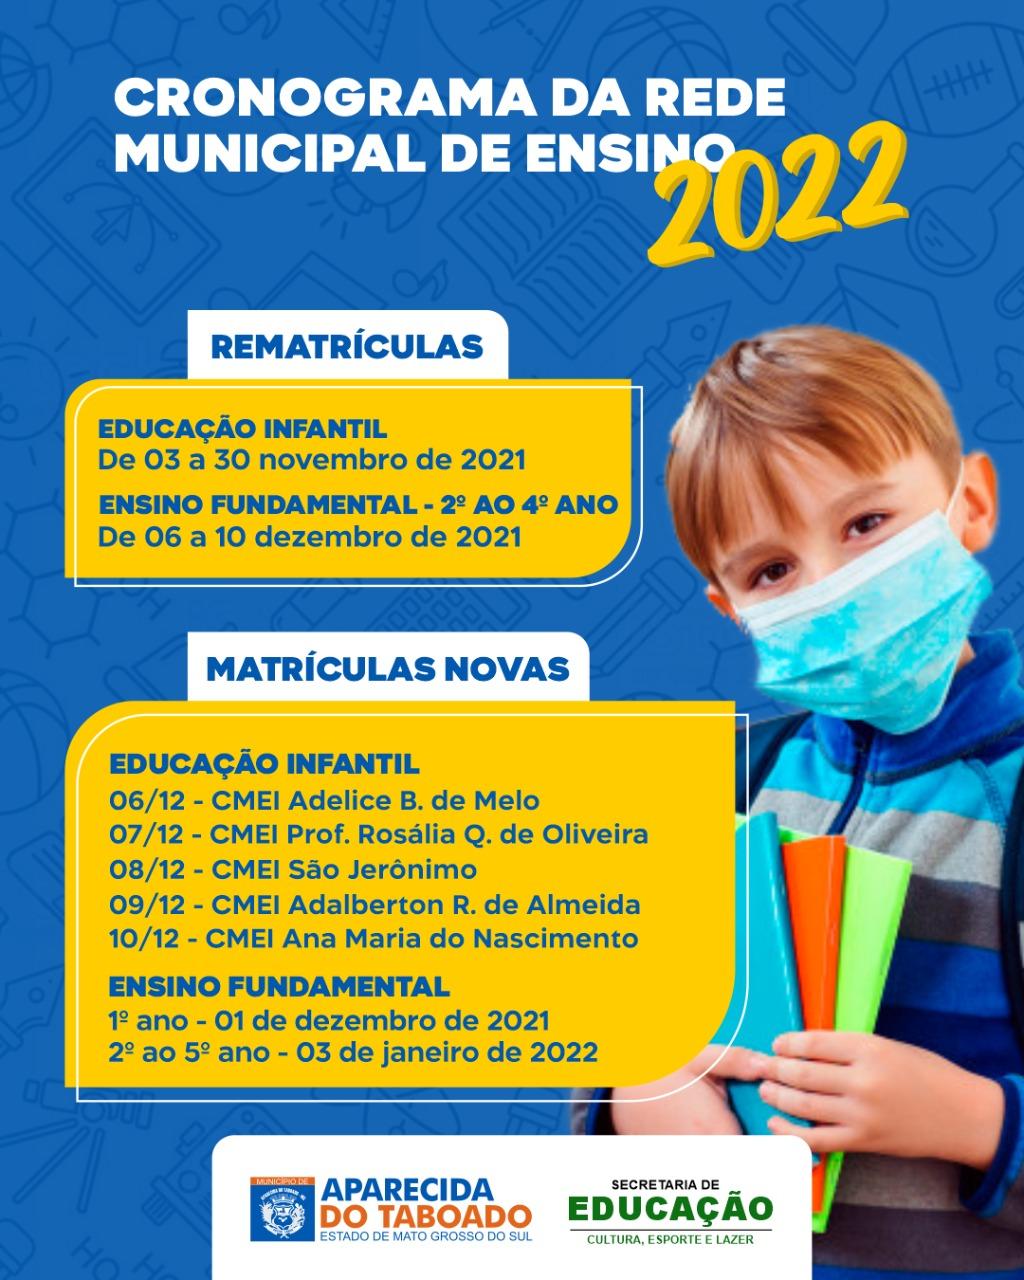 Secretaria de Educação lança calendário de matrículas e rematrículas 2022